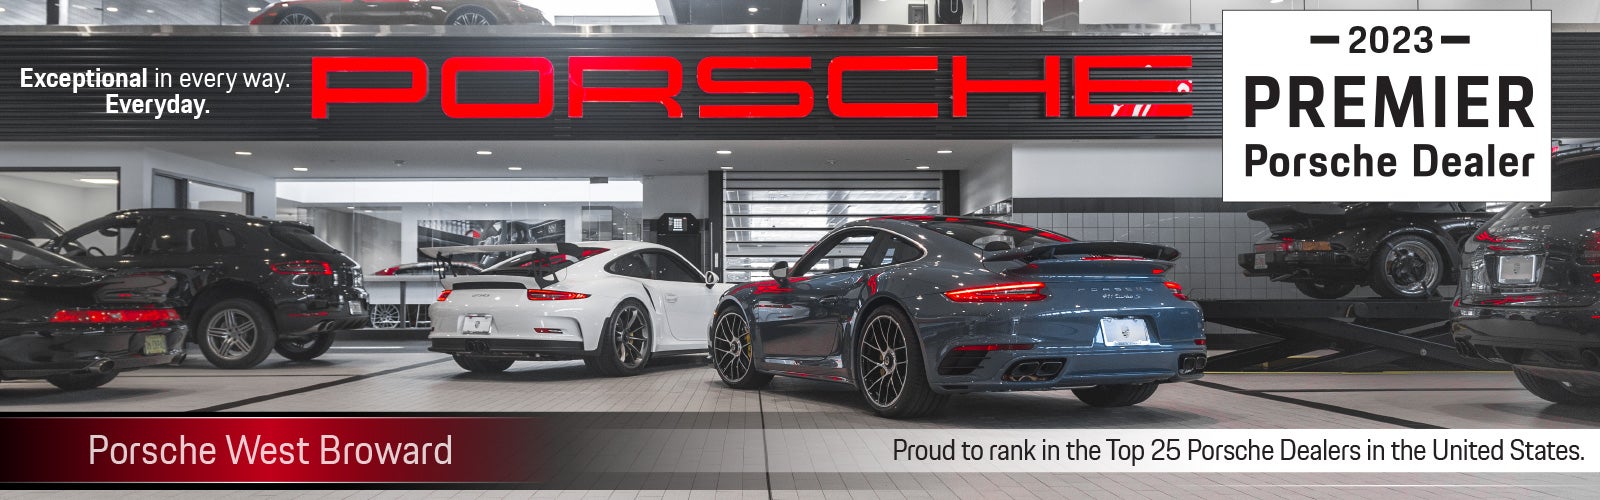 Porsche West Broward 2023 Premier Porsche Dealer